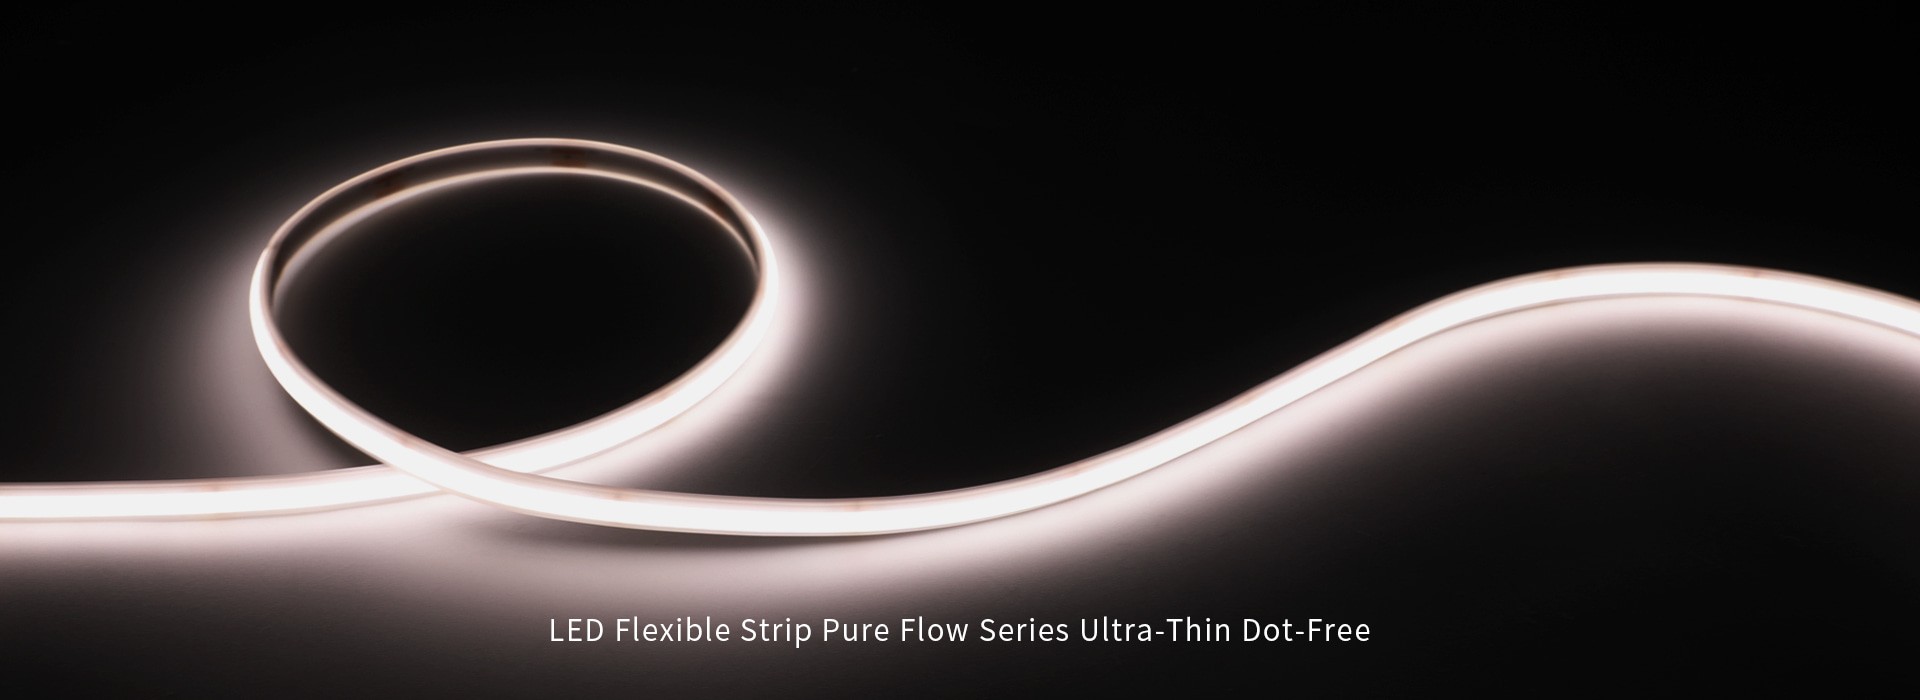 Гибкая светодиодная лента серии Pure Flow Ультратонкая без точек